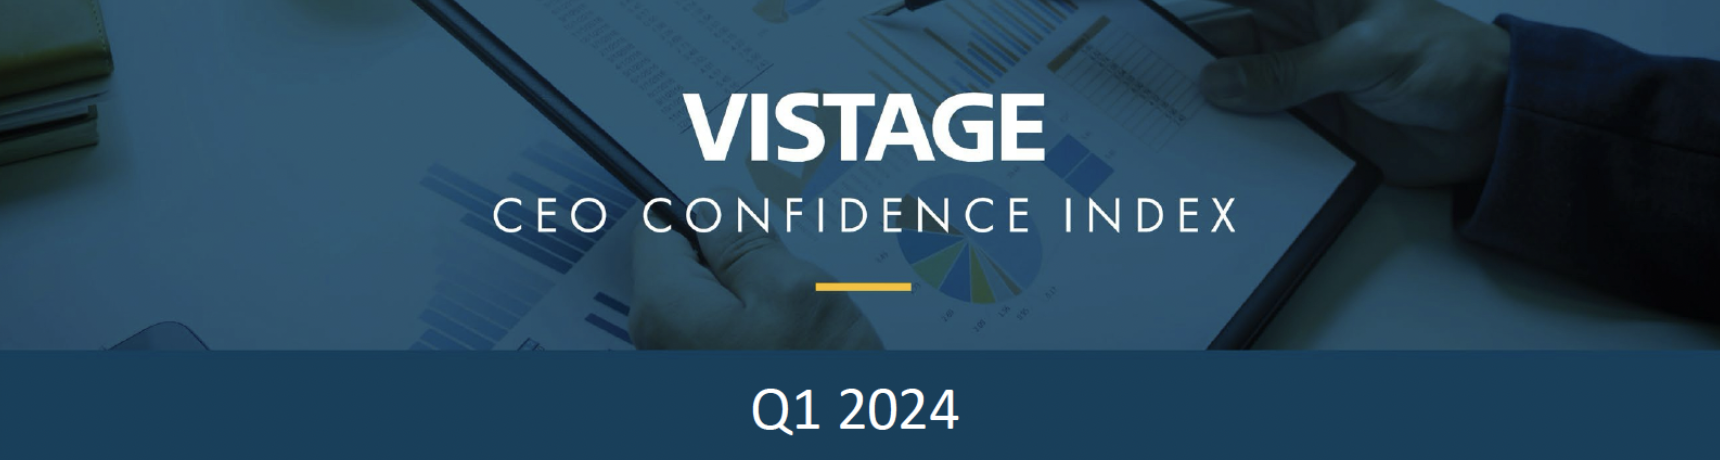 Vistage CEO Confidence Index